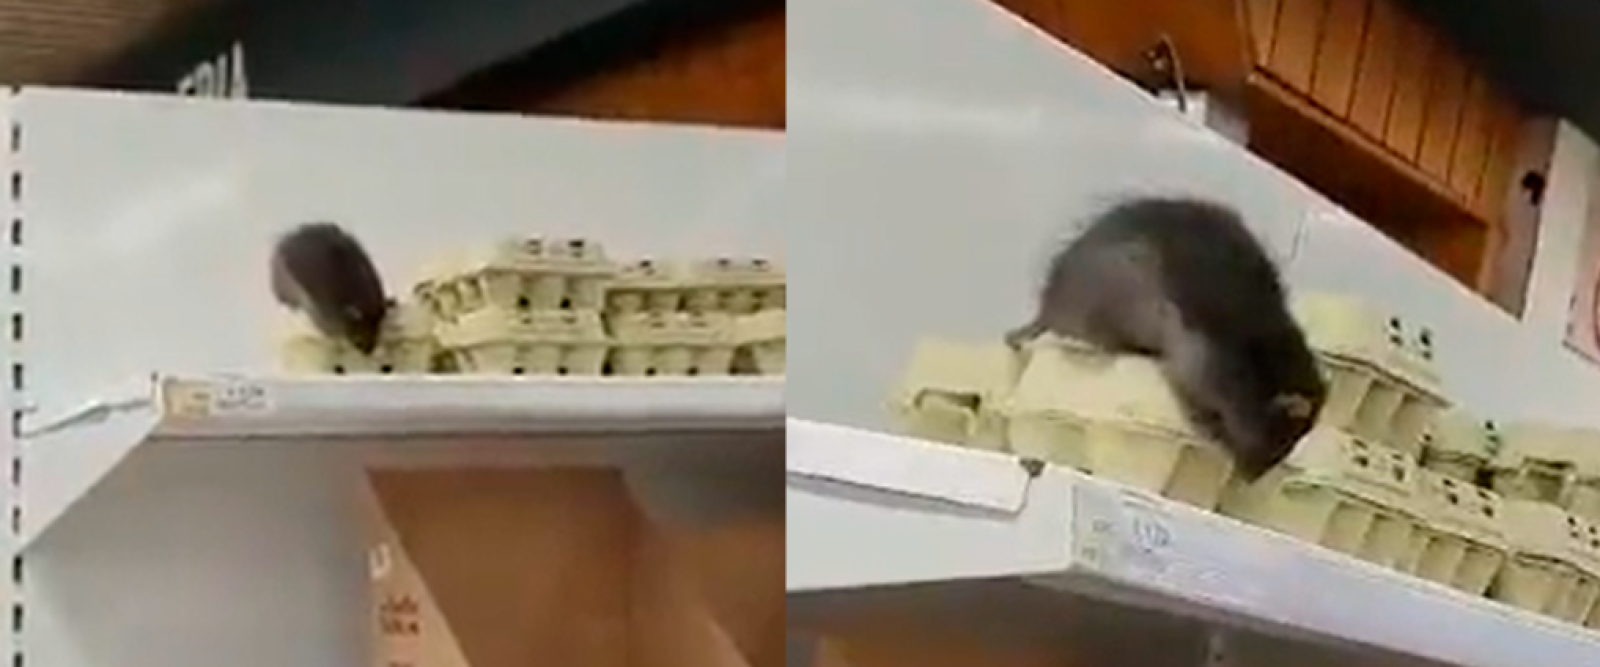 Captan a rata posada sobre caja de huevos en supermercado de Loncoche